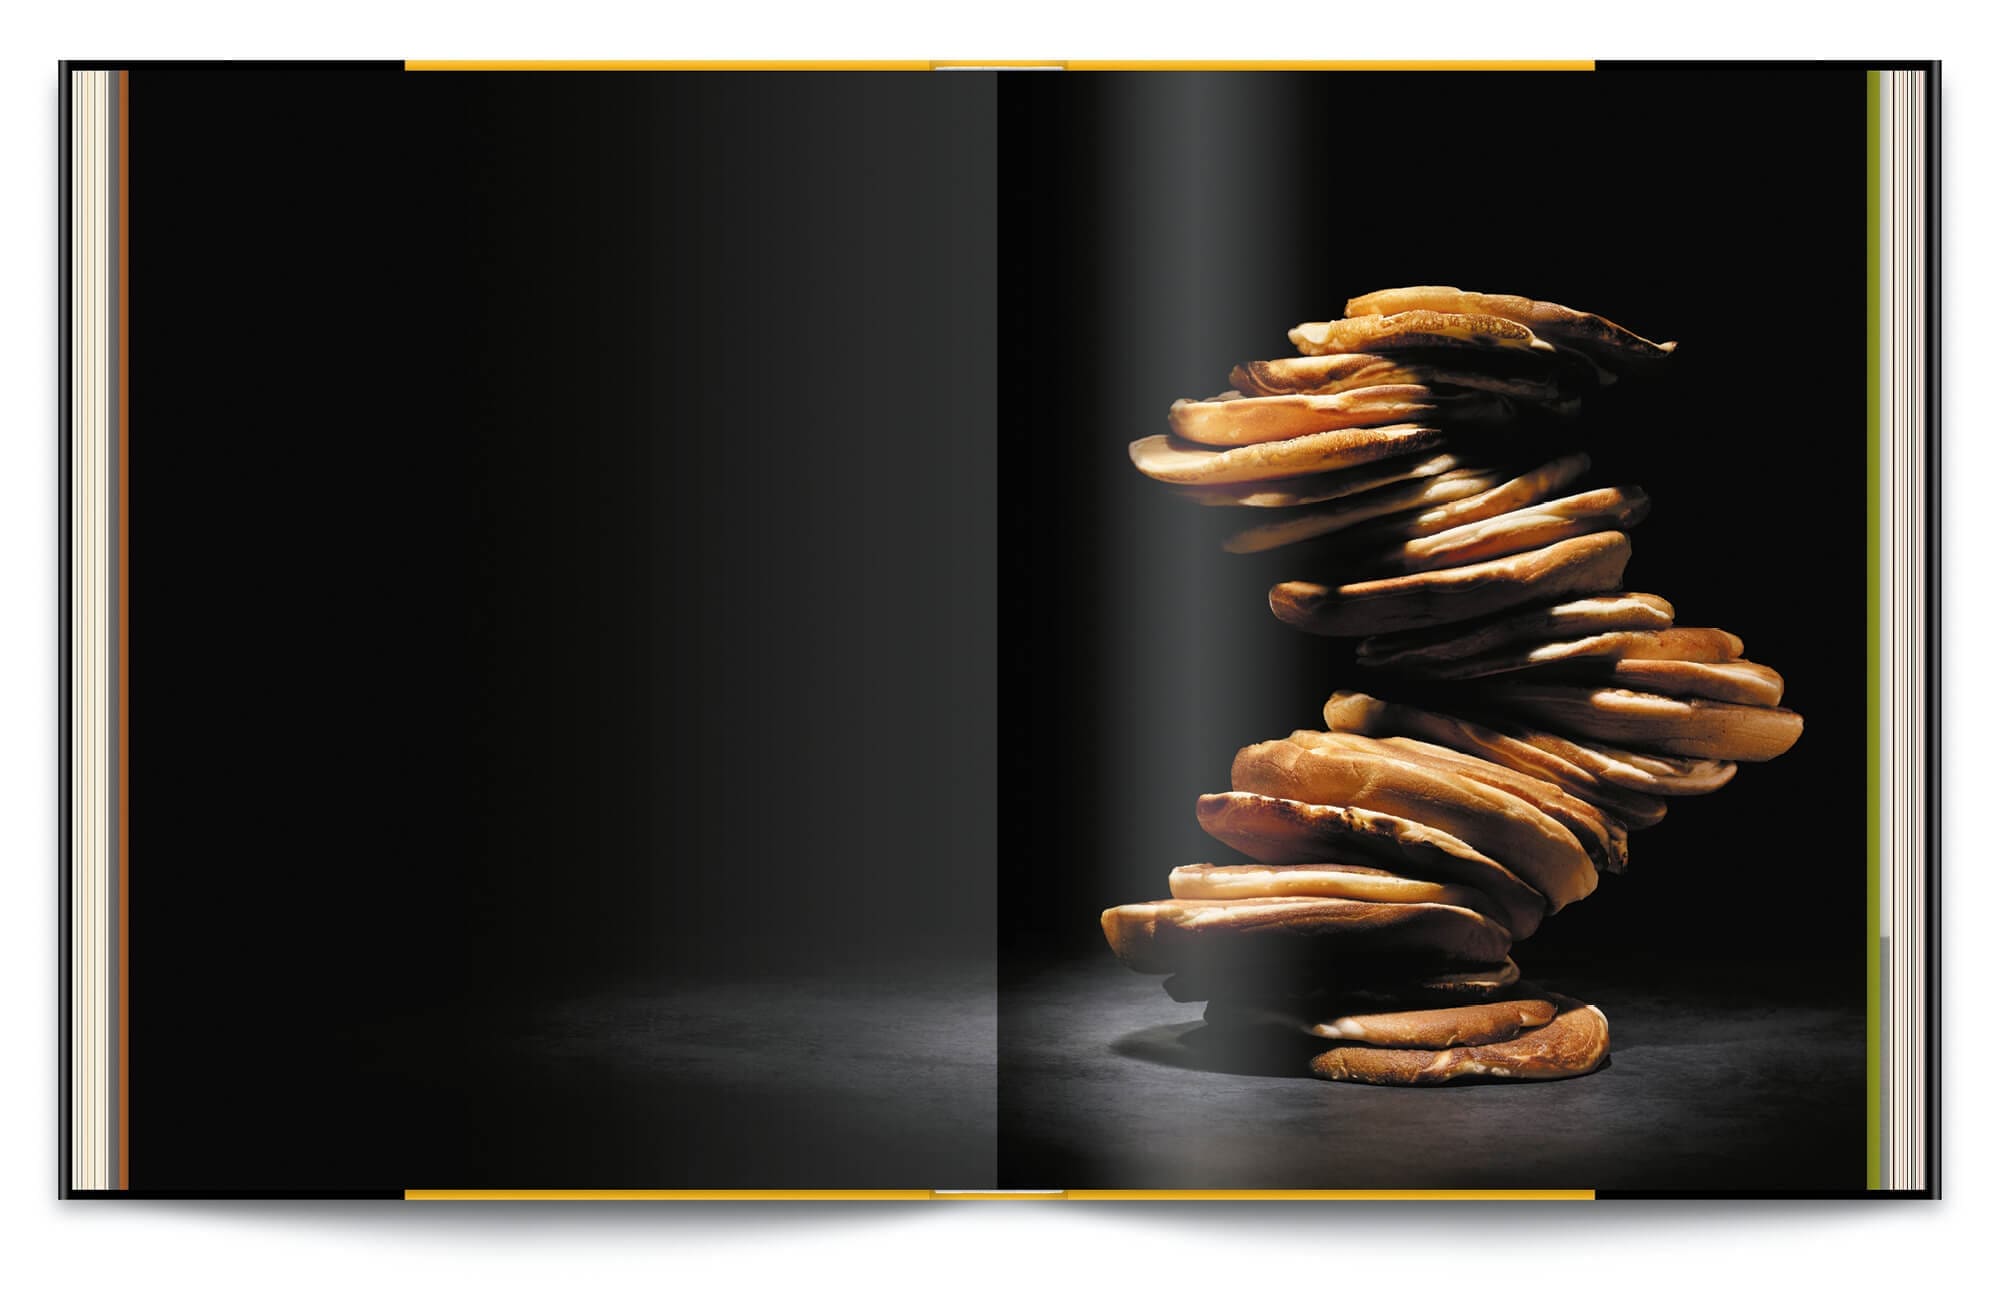 Ichetkar signe la direction artistique du livre Infiniment de Pierre Hermé, pancake façon tour de Pise photographié par Jean-Jacques Pallot